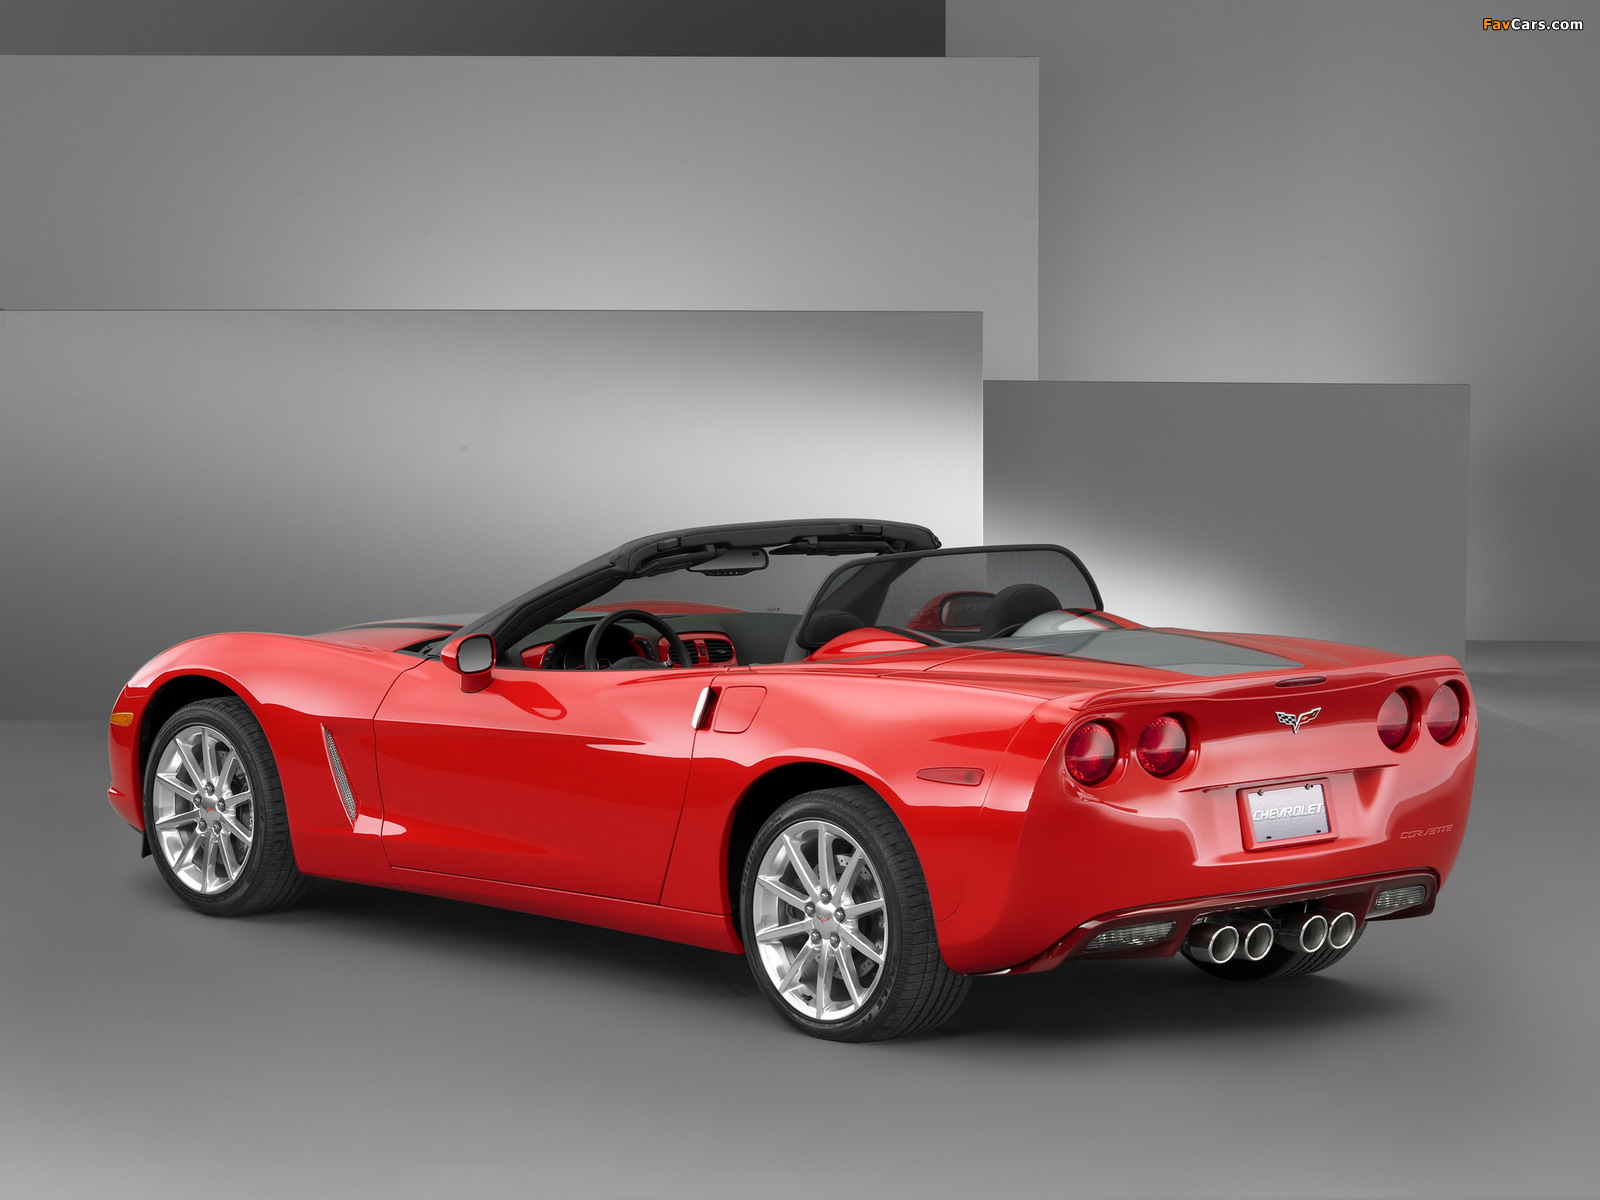 Corvette Convertible Street Appearance Concept (C6) 2004 pictures (1600 x 1200)